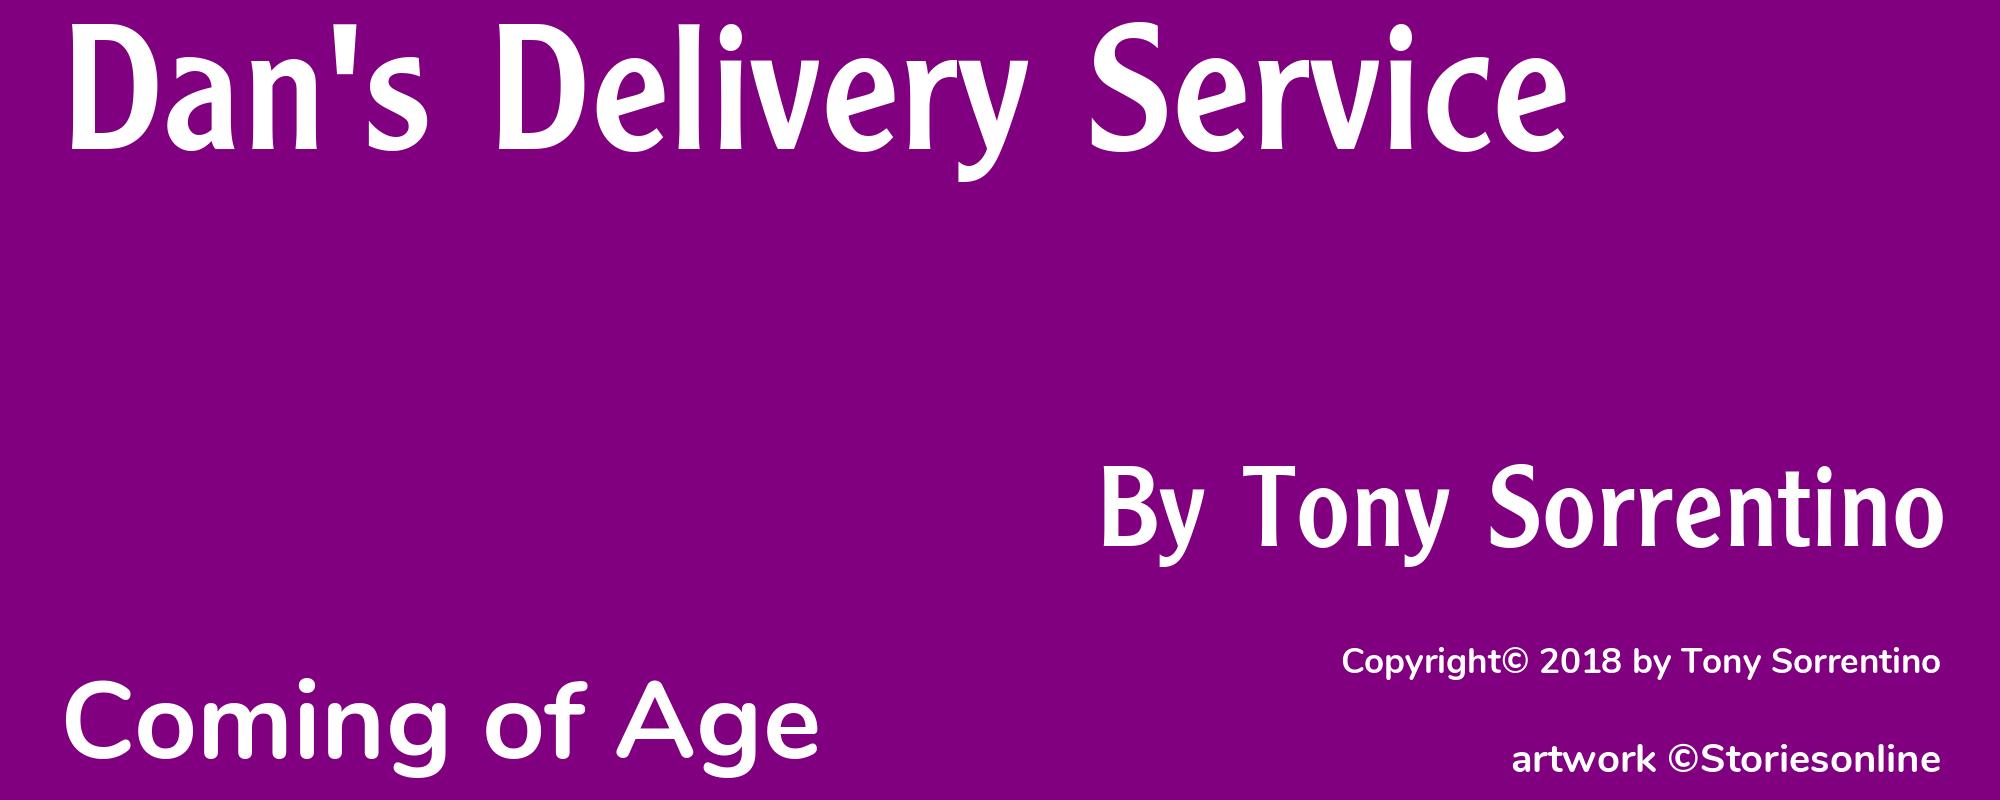 Dan's Delivery Service - Cover